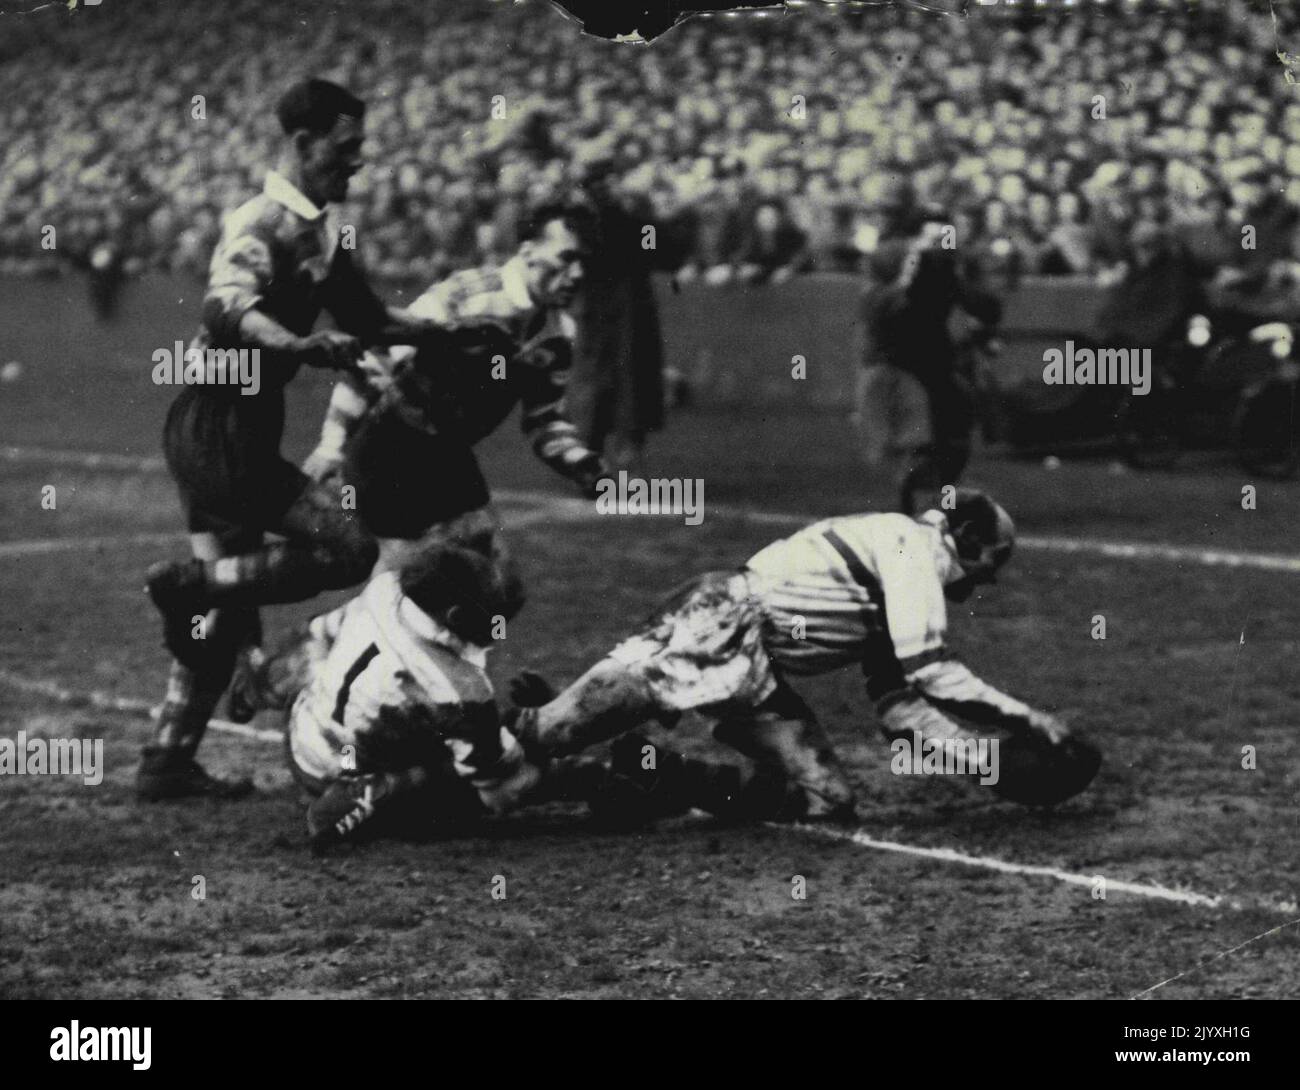 Finale del campionato di Rugby League. L'ala destra australiana Brian Bevan (Warrington) segna la prova che ha aiutato Warrington a vincere la League Championship Cup. Seconda stagione successiva per l'altro australiano Harry Bath ha calciato due gol di penalizzazione. 14 maggio 1955. Foto Stock